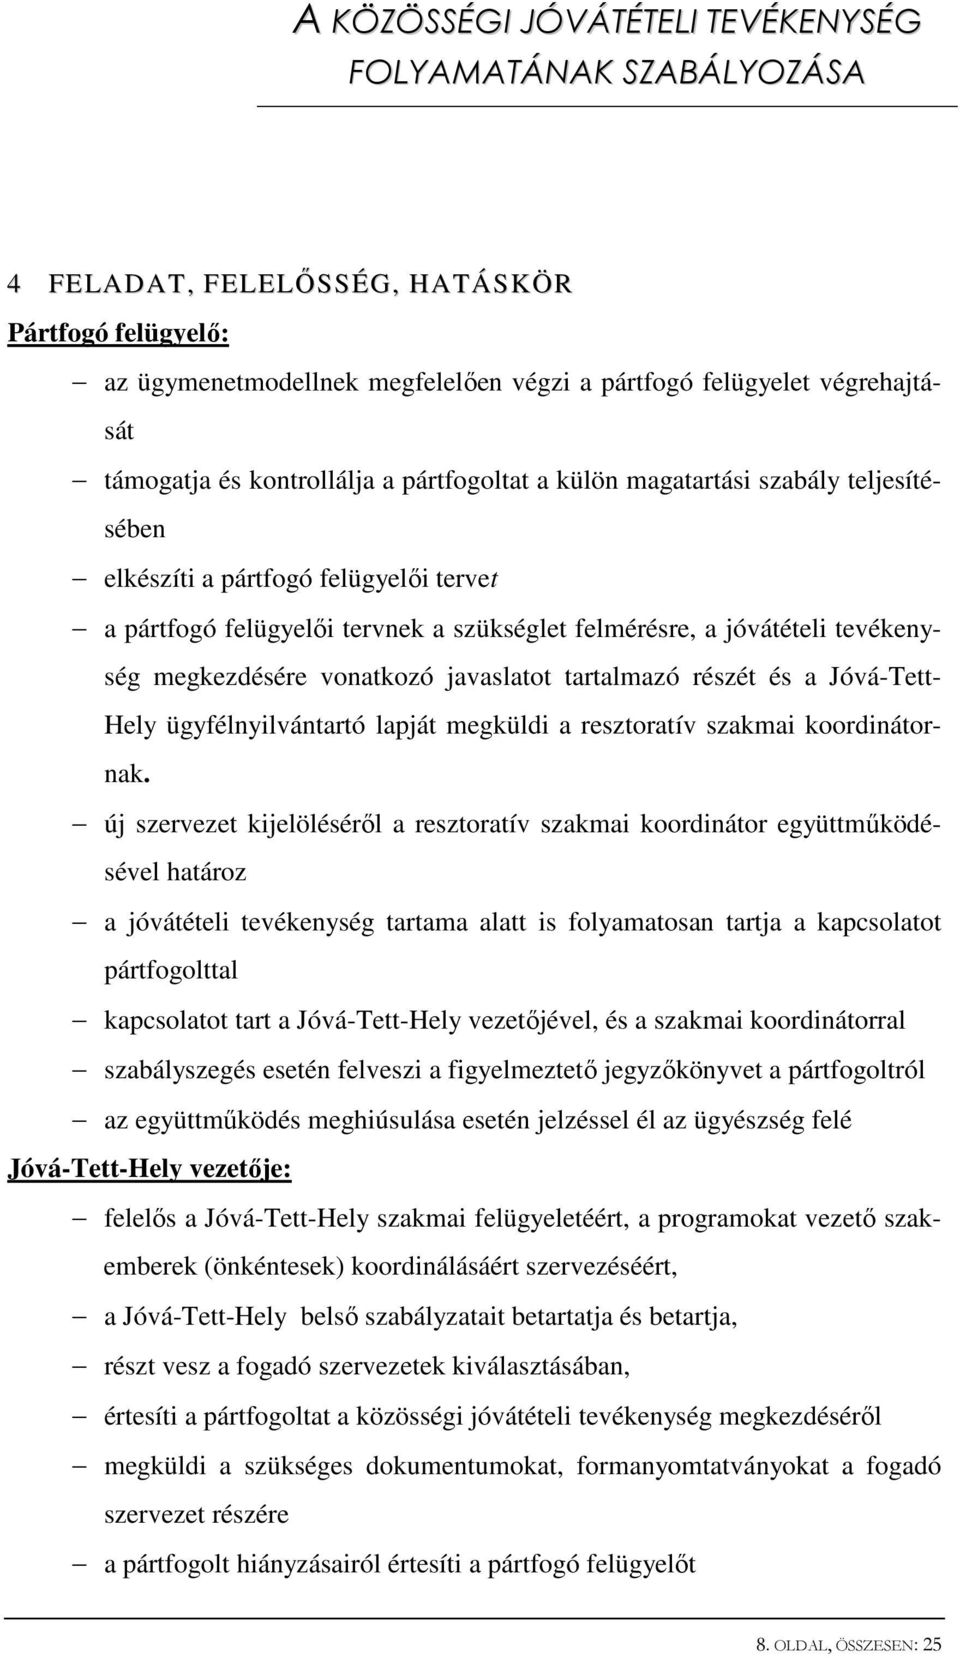 Jóvá-Tett- Hely ügyfélnyilvántartó lapját megküldi a resztoratív szakmai koordinátornak.